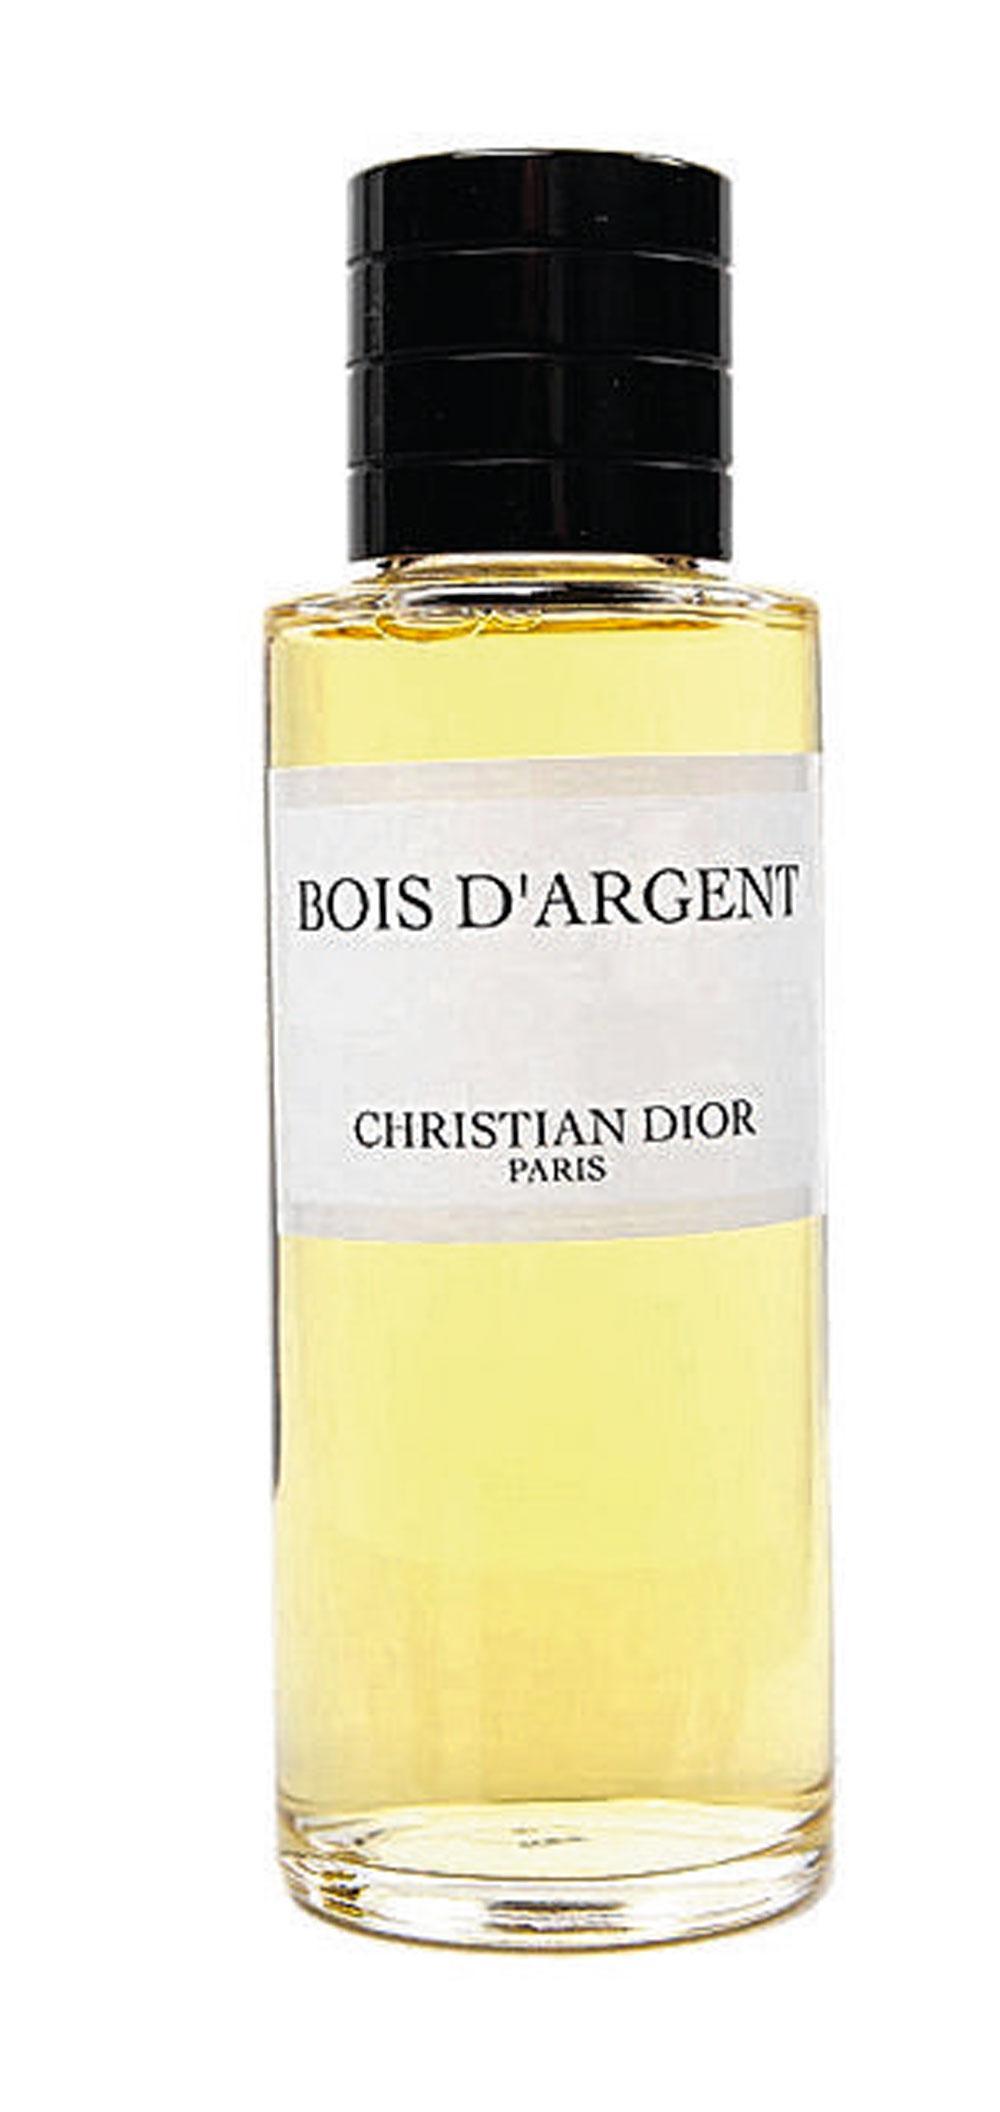 Eau de parfum Bois d'Argent, Parfum maison Christian Dior, 198 euros les 125 ml.